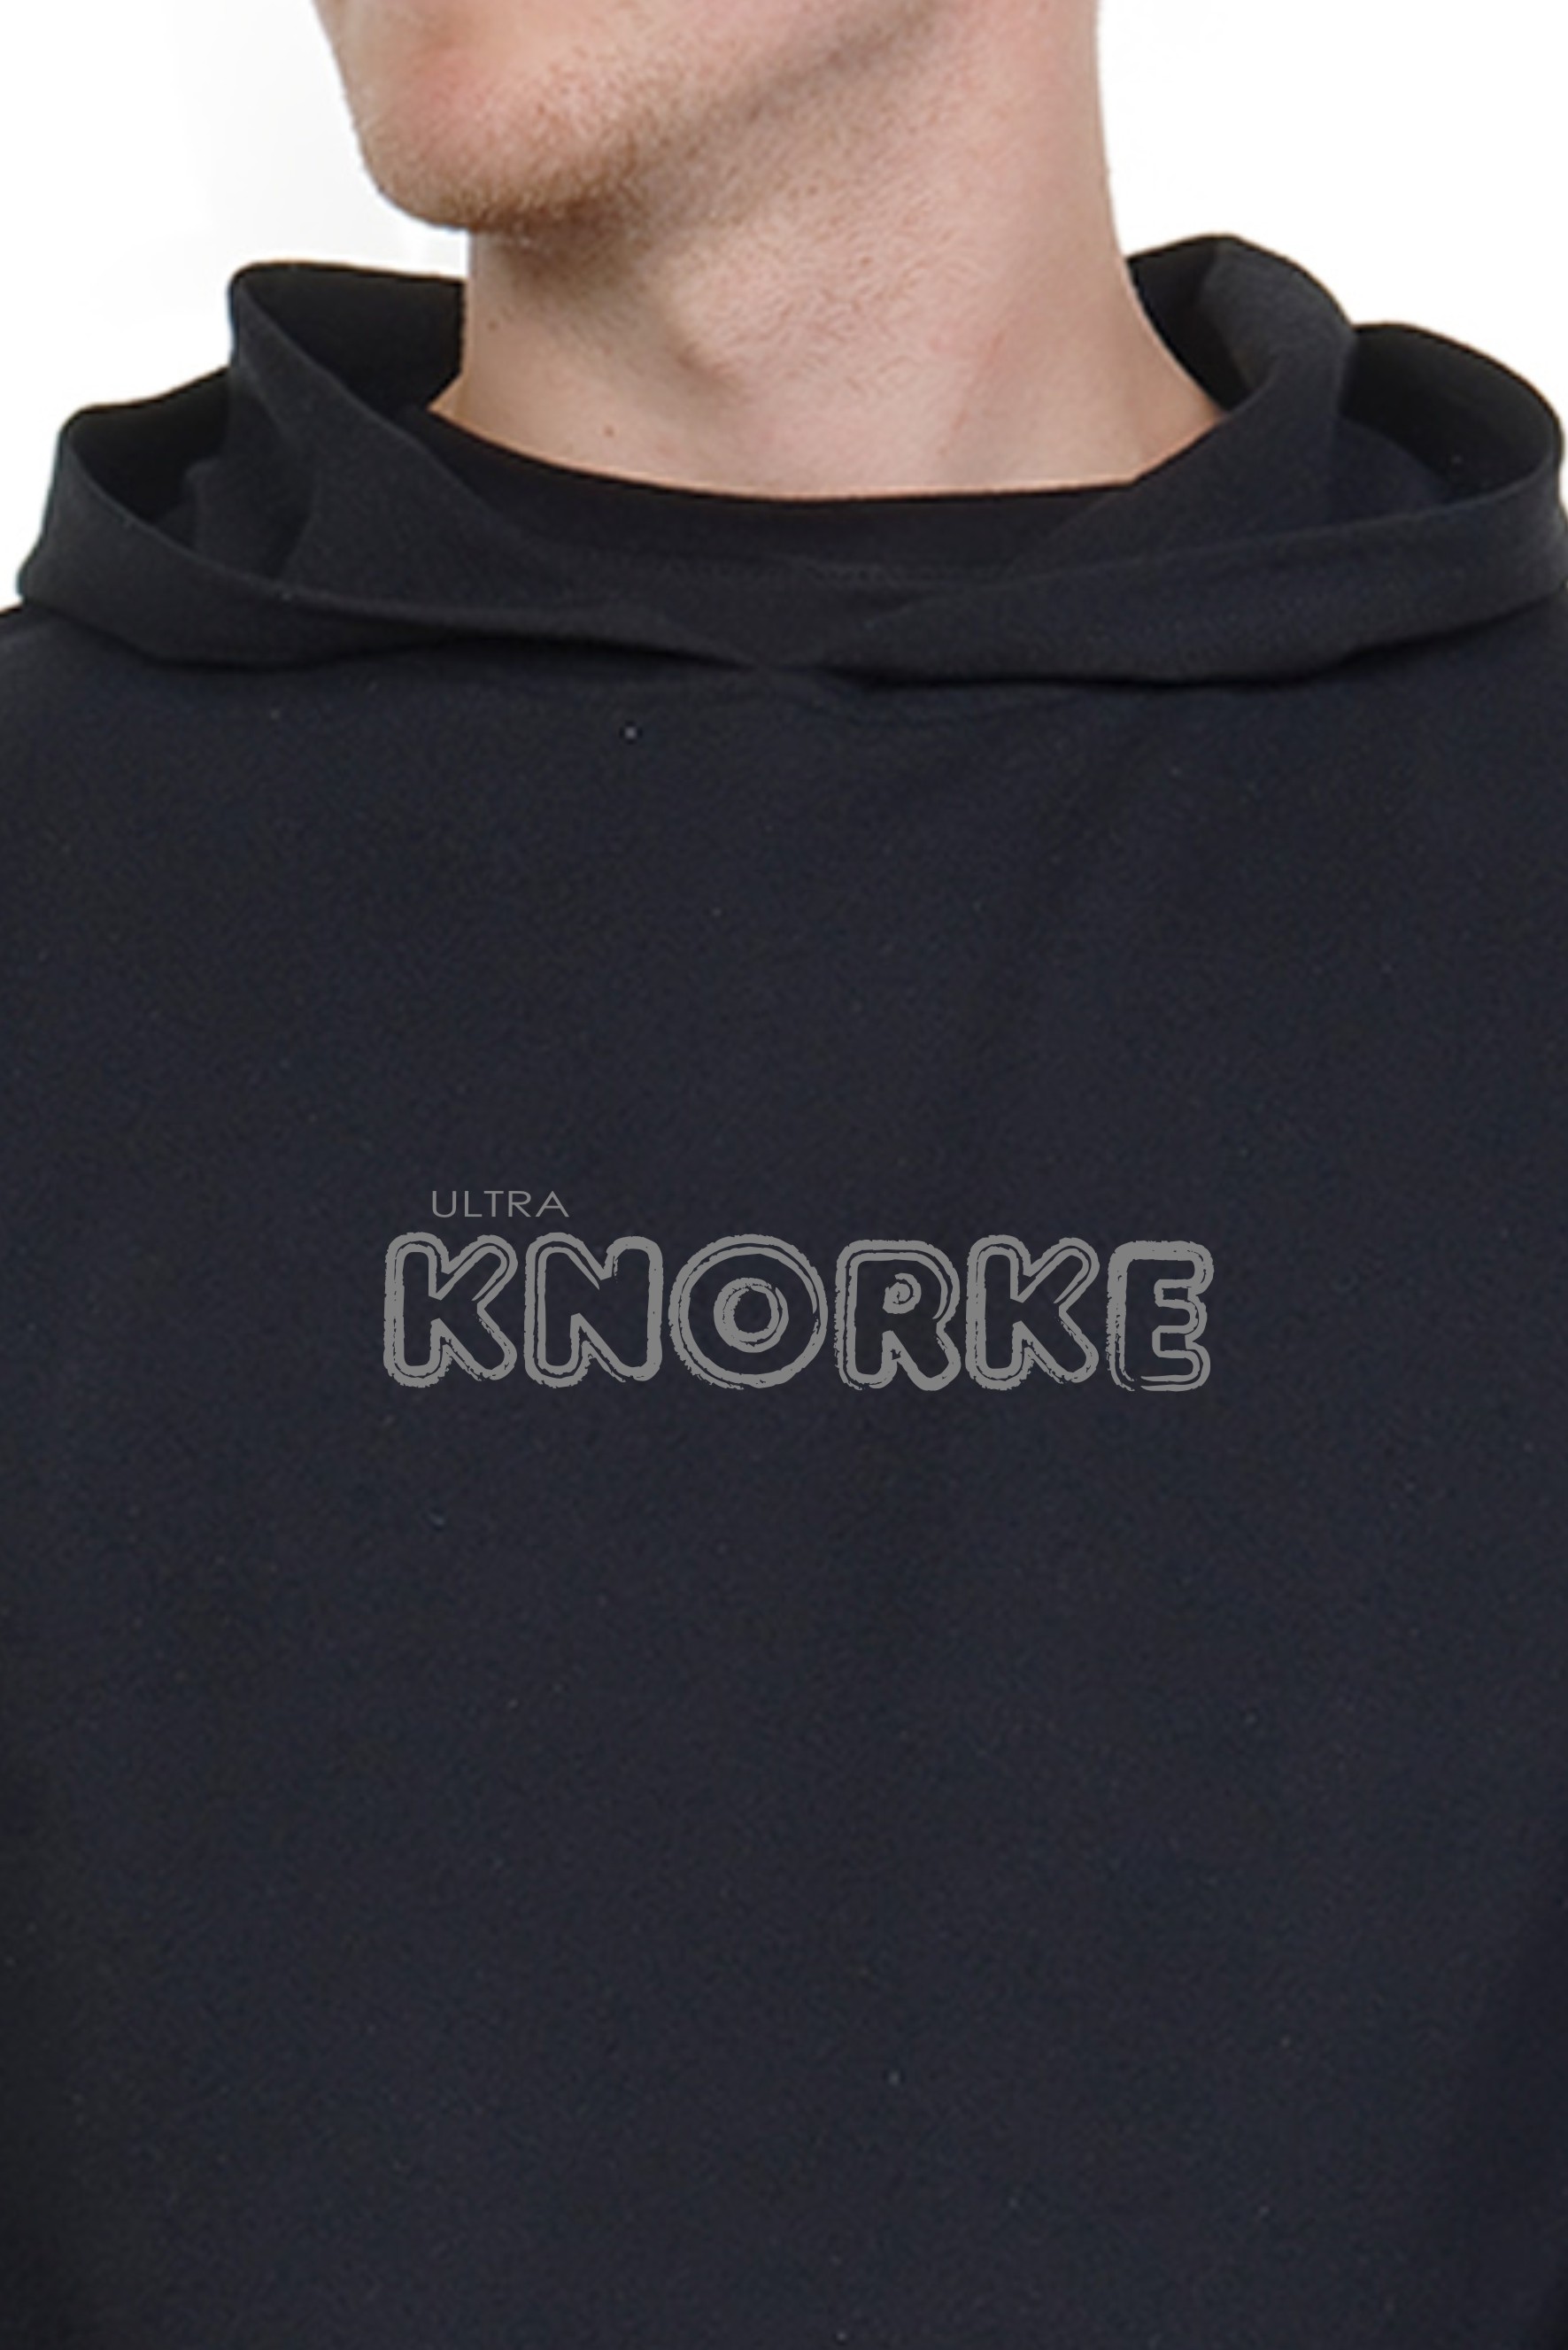  Spree Hoodie Herren ultra Knorke